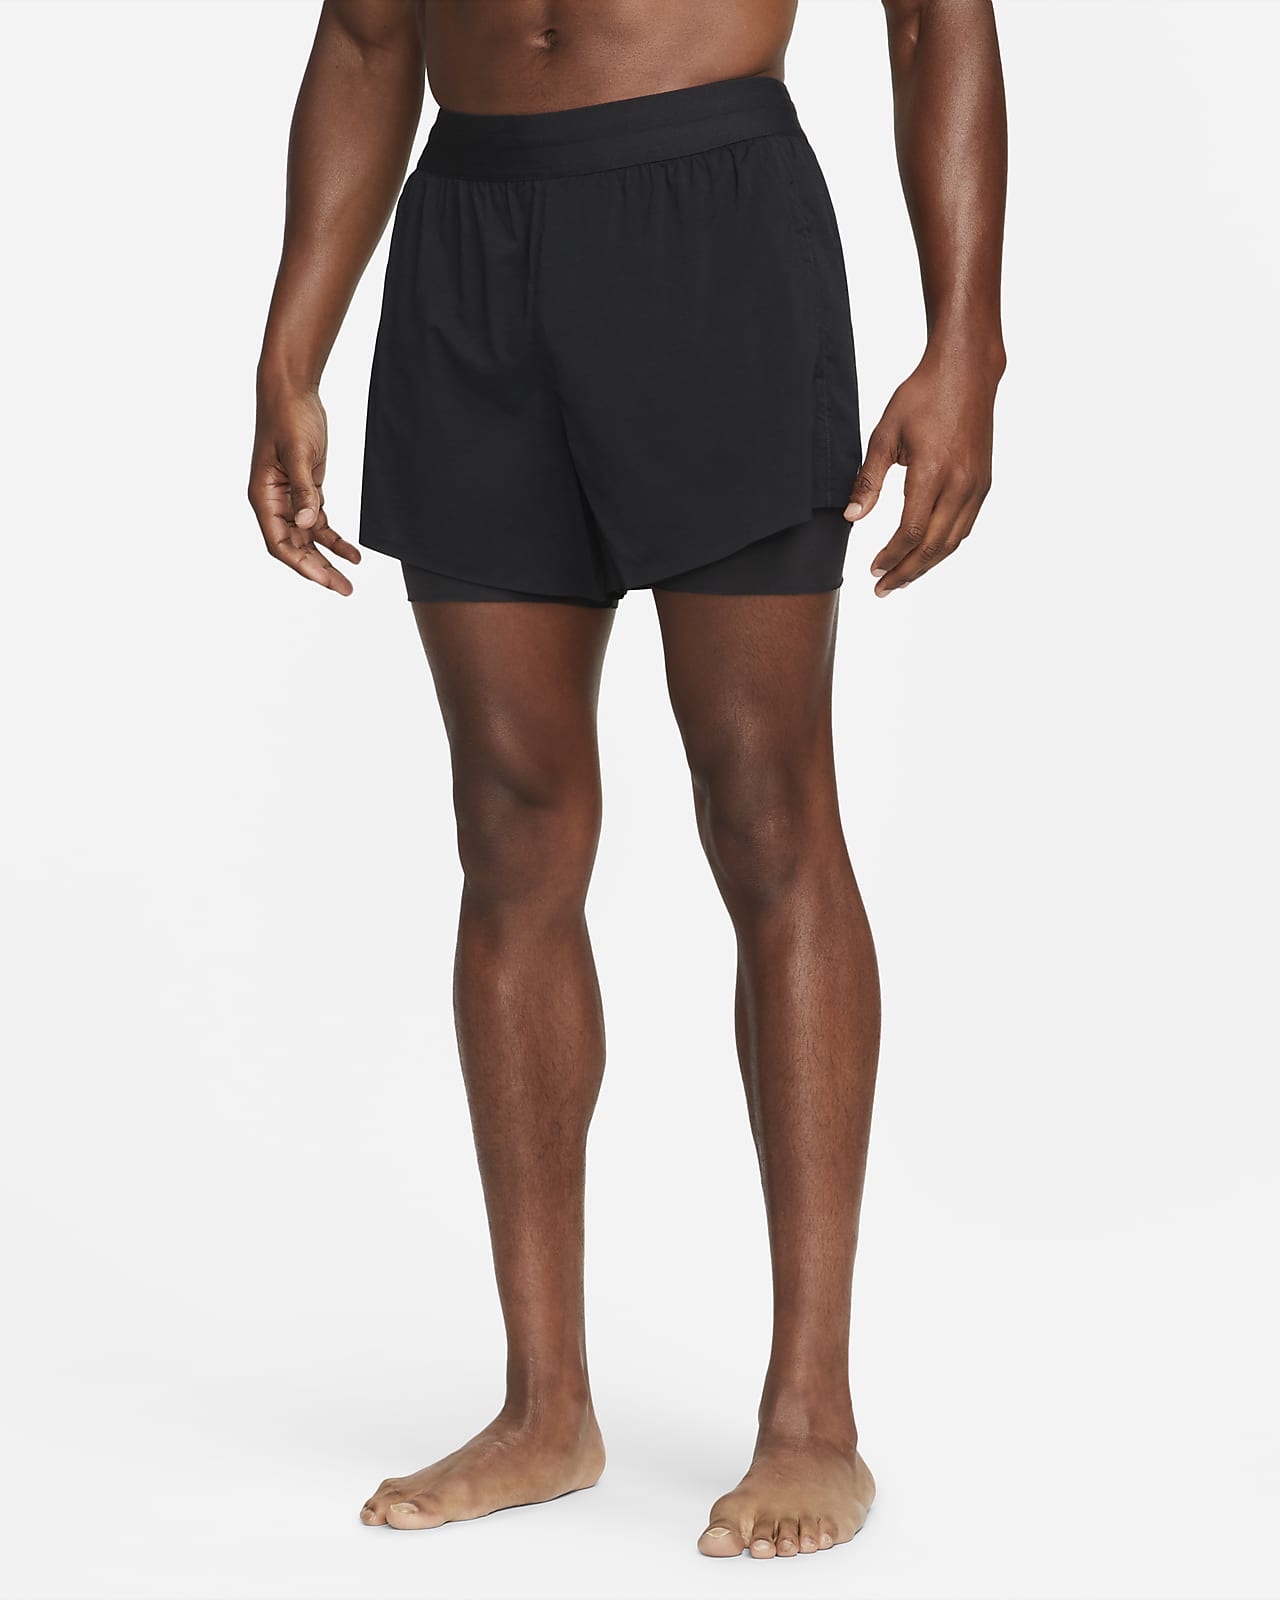 Nike Yoga Men's Hot Yoga Shorts